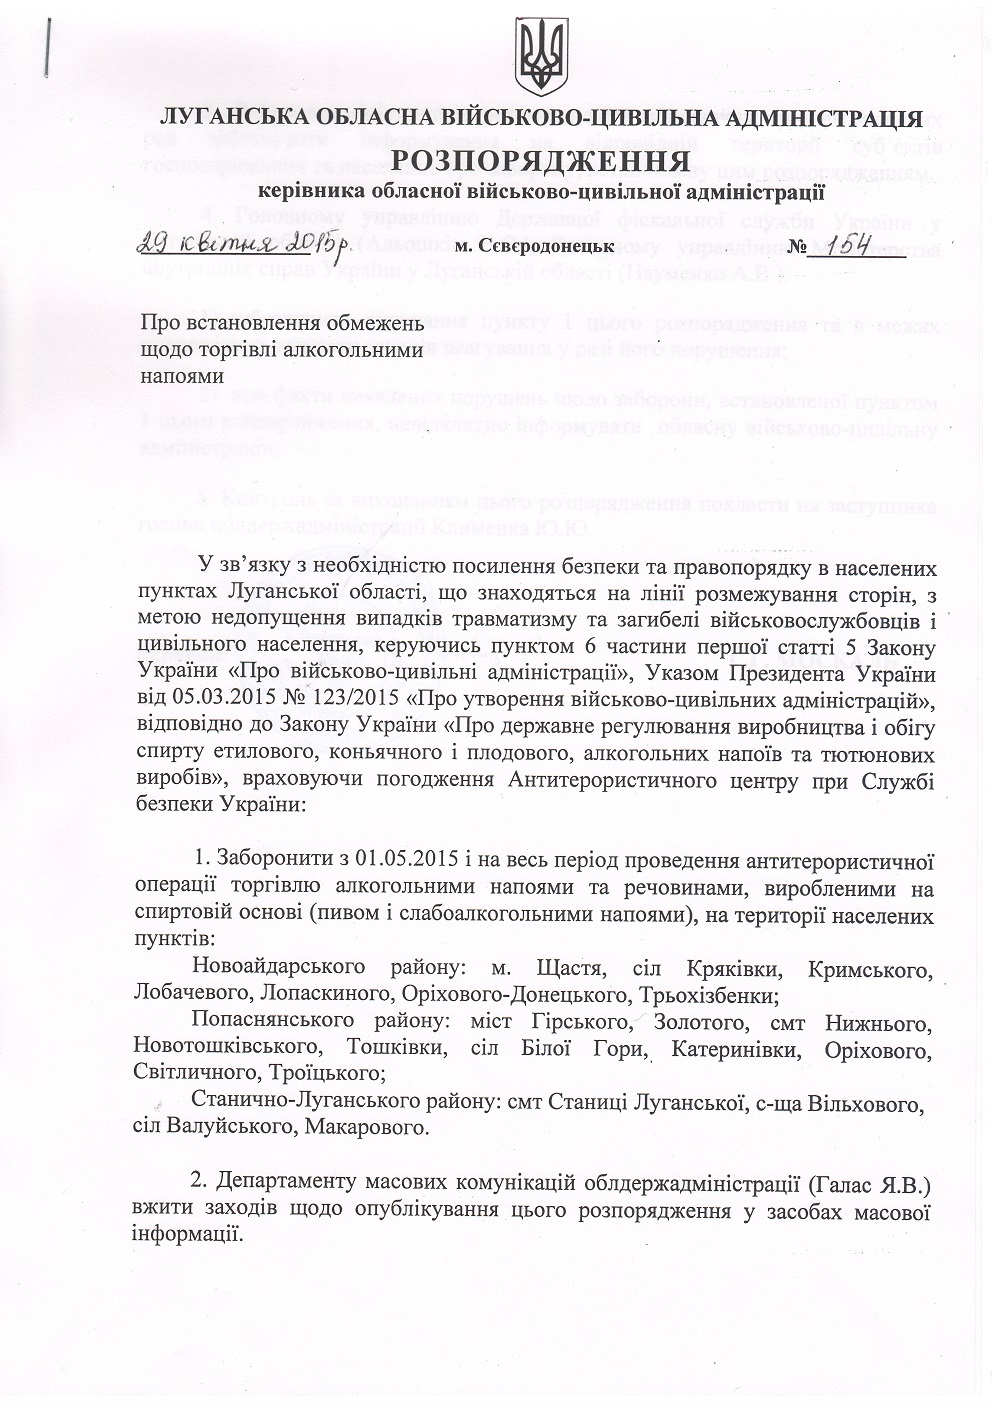 Москаль вдруге оголосив "сухий закон" на українській Луганщині (ДОКУМЕНТ) - фото 1